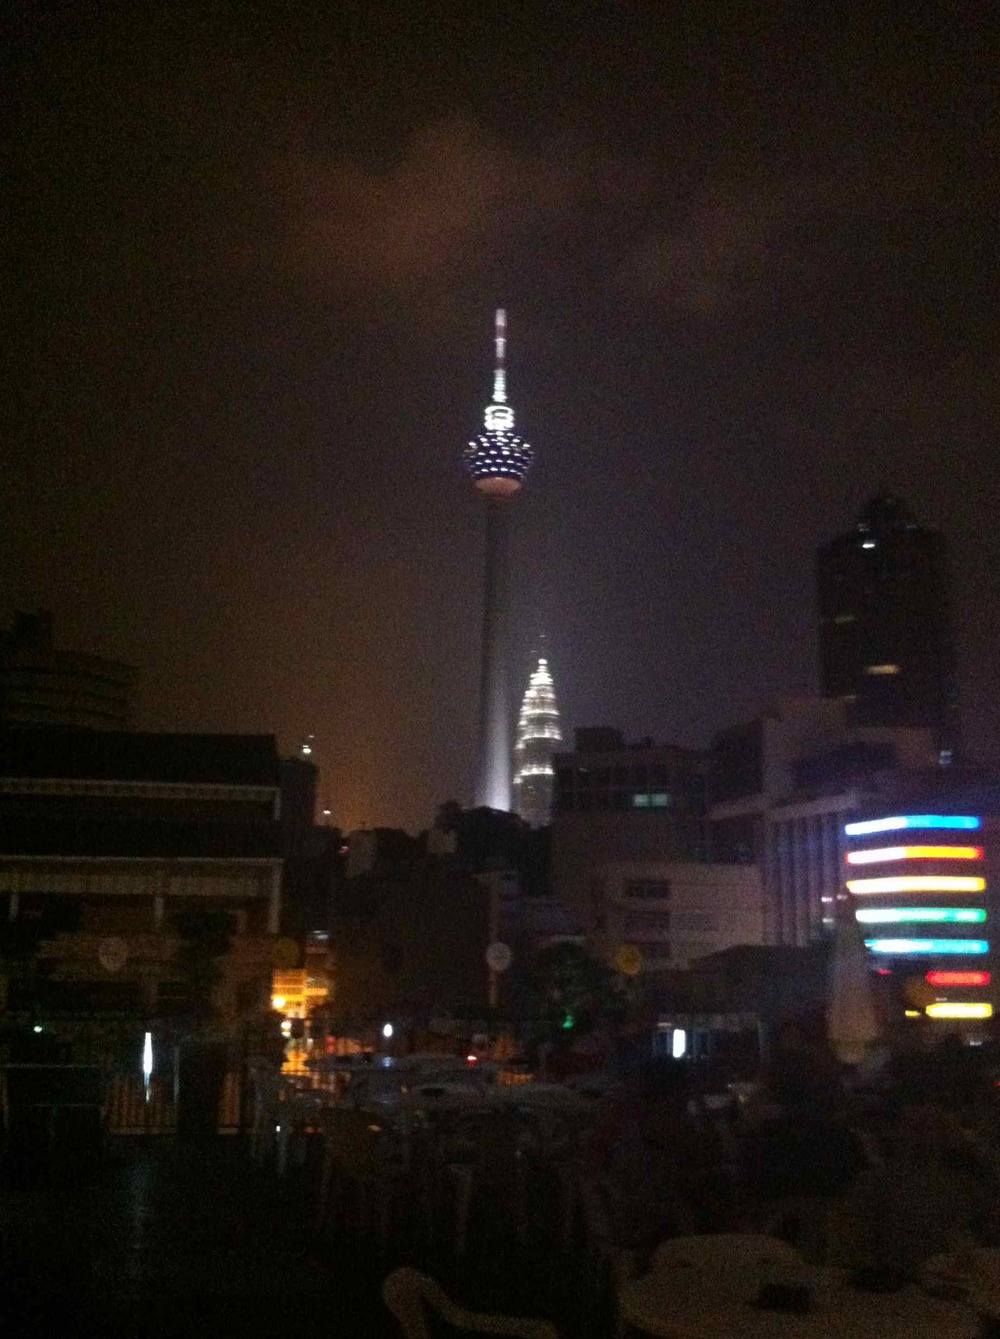 KL Tower at Night